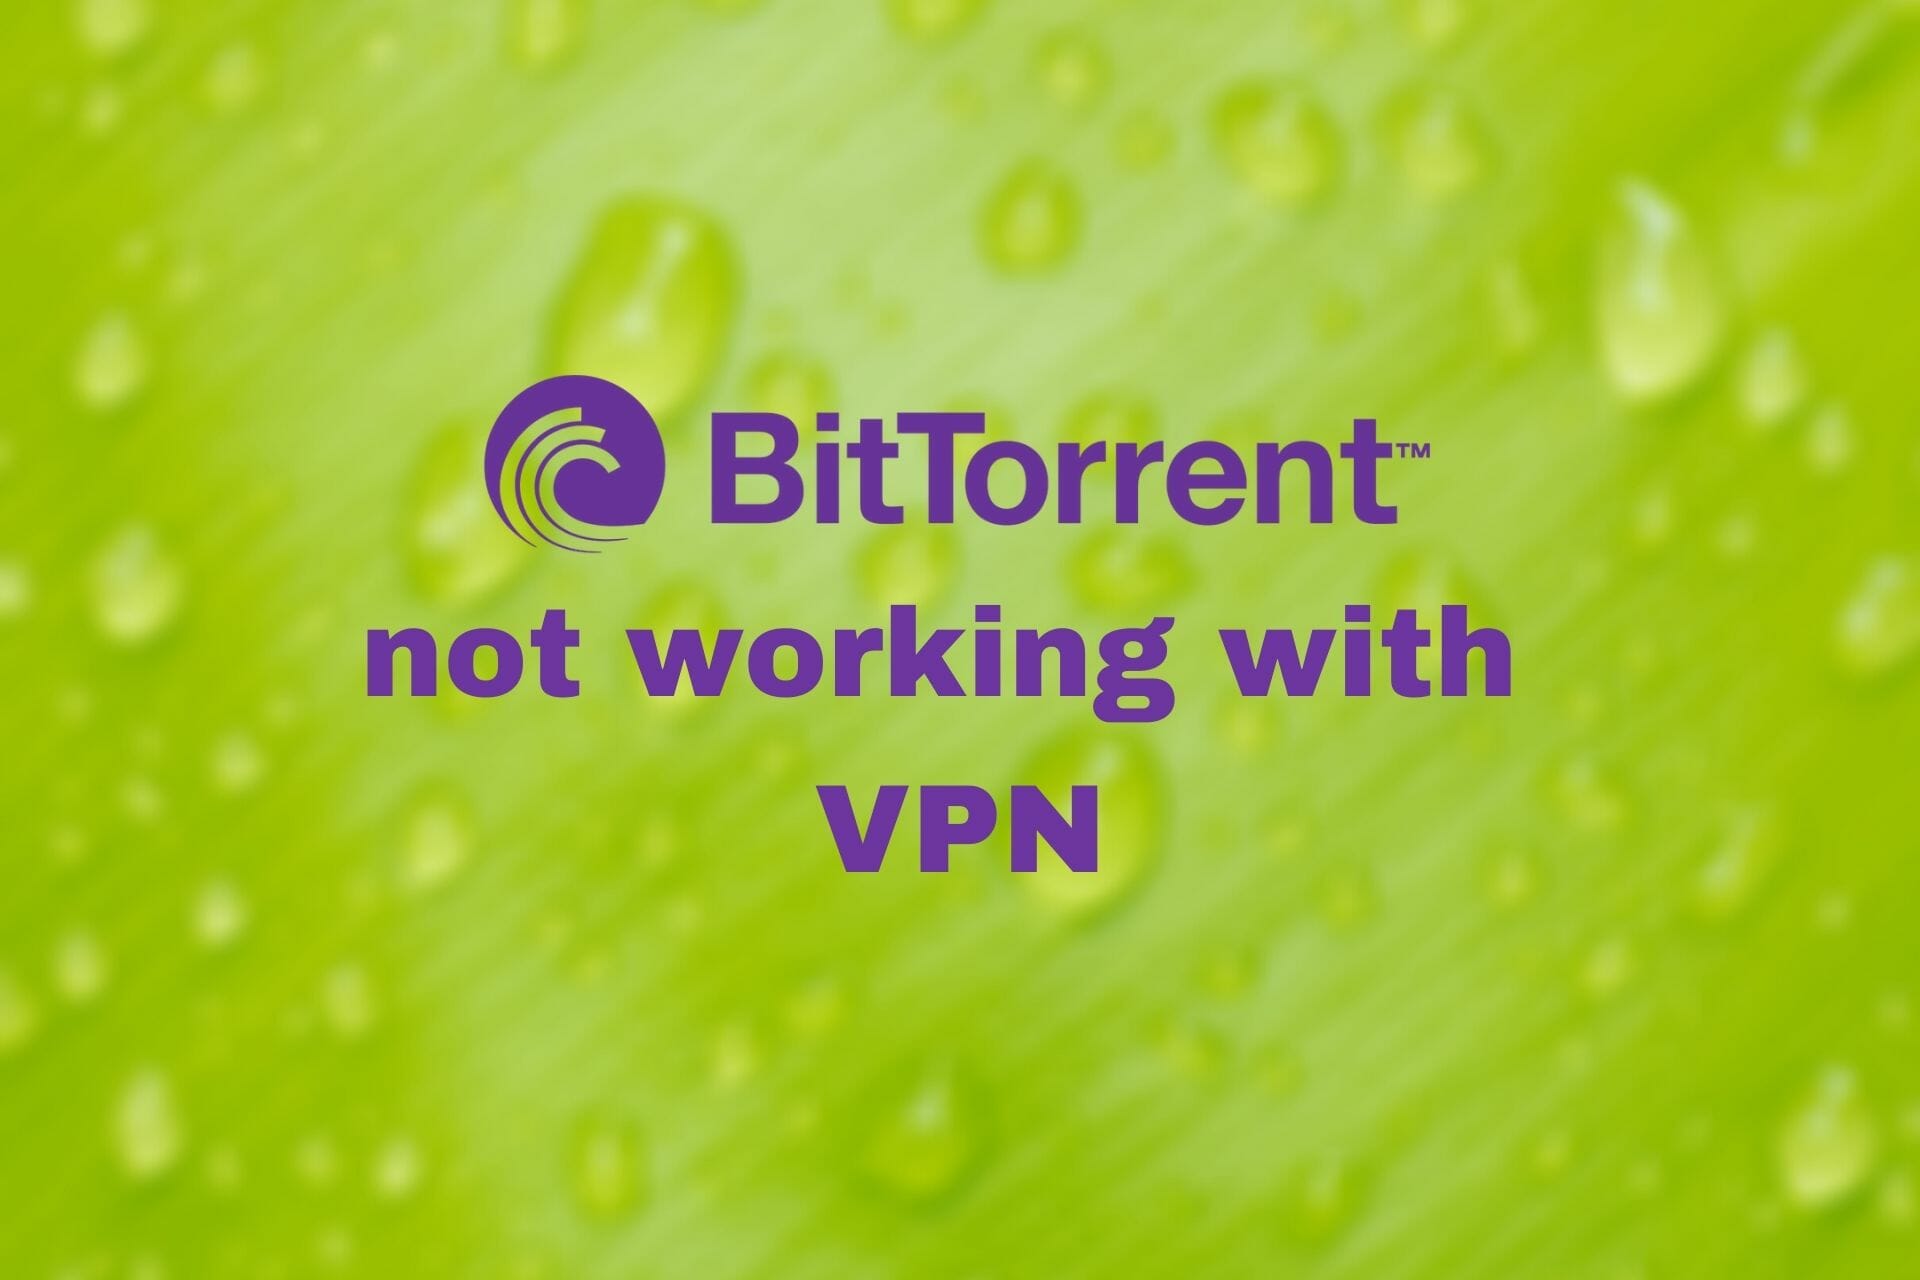 BitTorrent not working with VPN